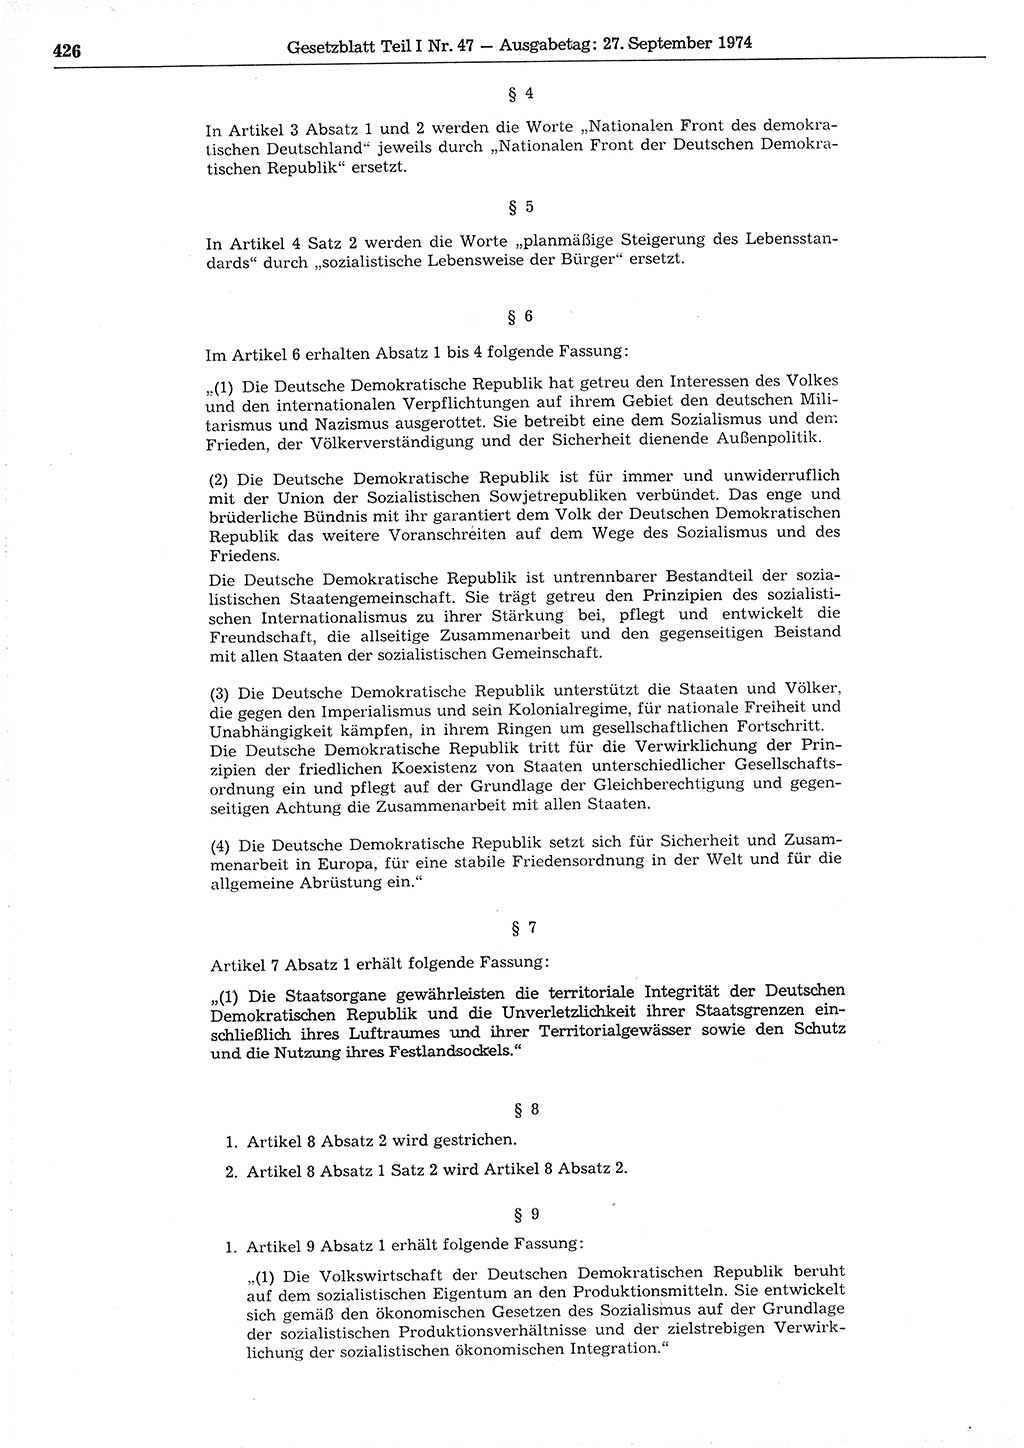 Gesetzblatt (GBl.) der Deutschen Demokratischen Republik (DDR) Teil Ⅰ 1974, Seite 426 (GBl. DDR Ⅰ 1974, S. 426)